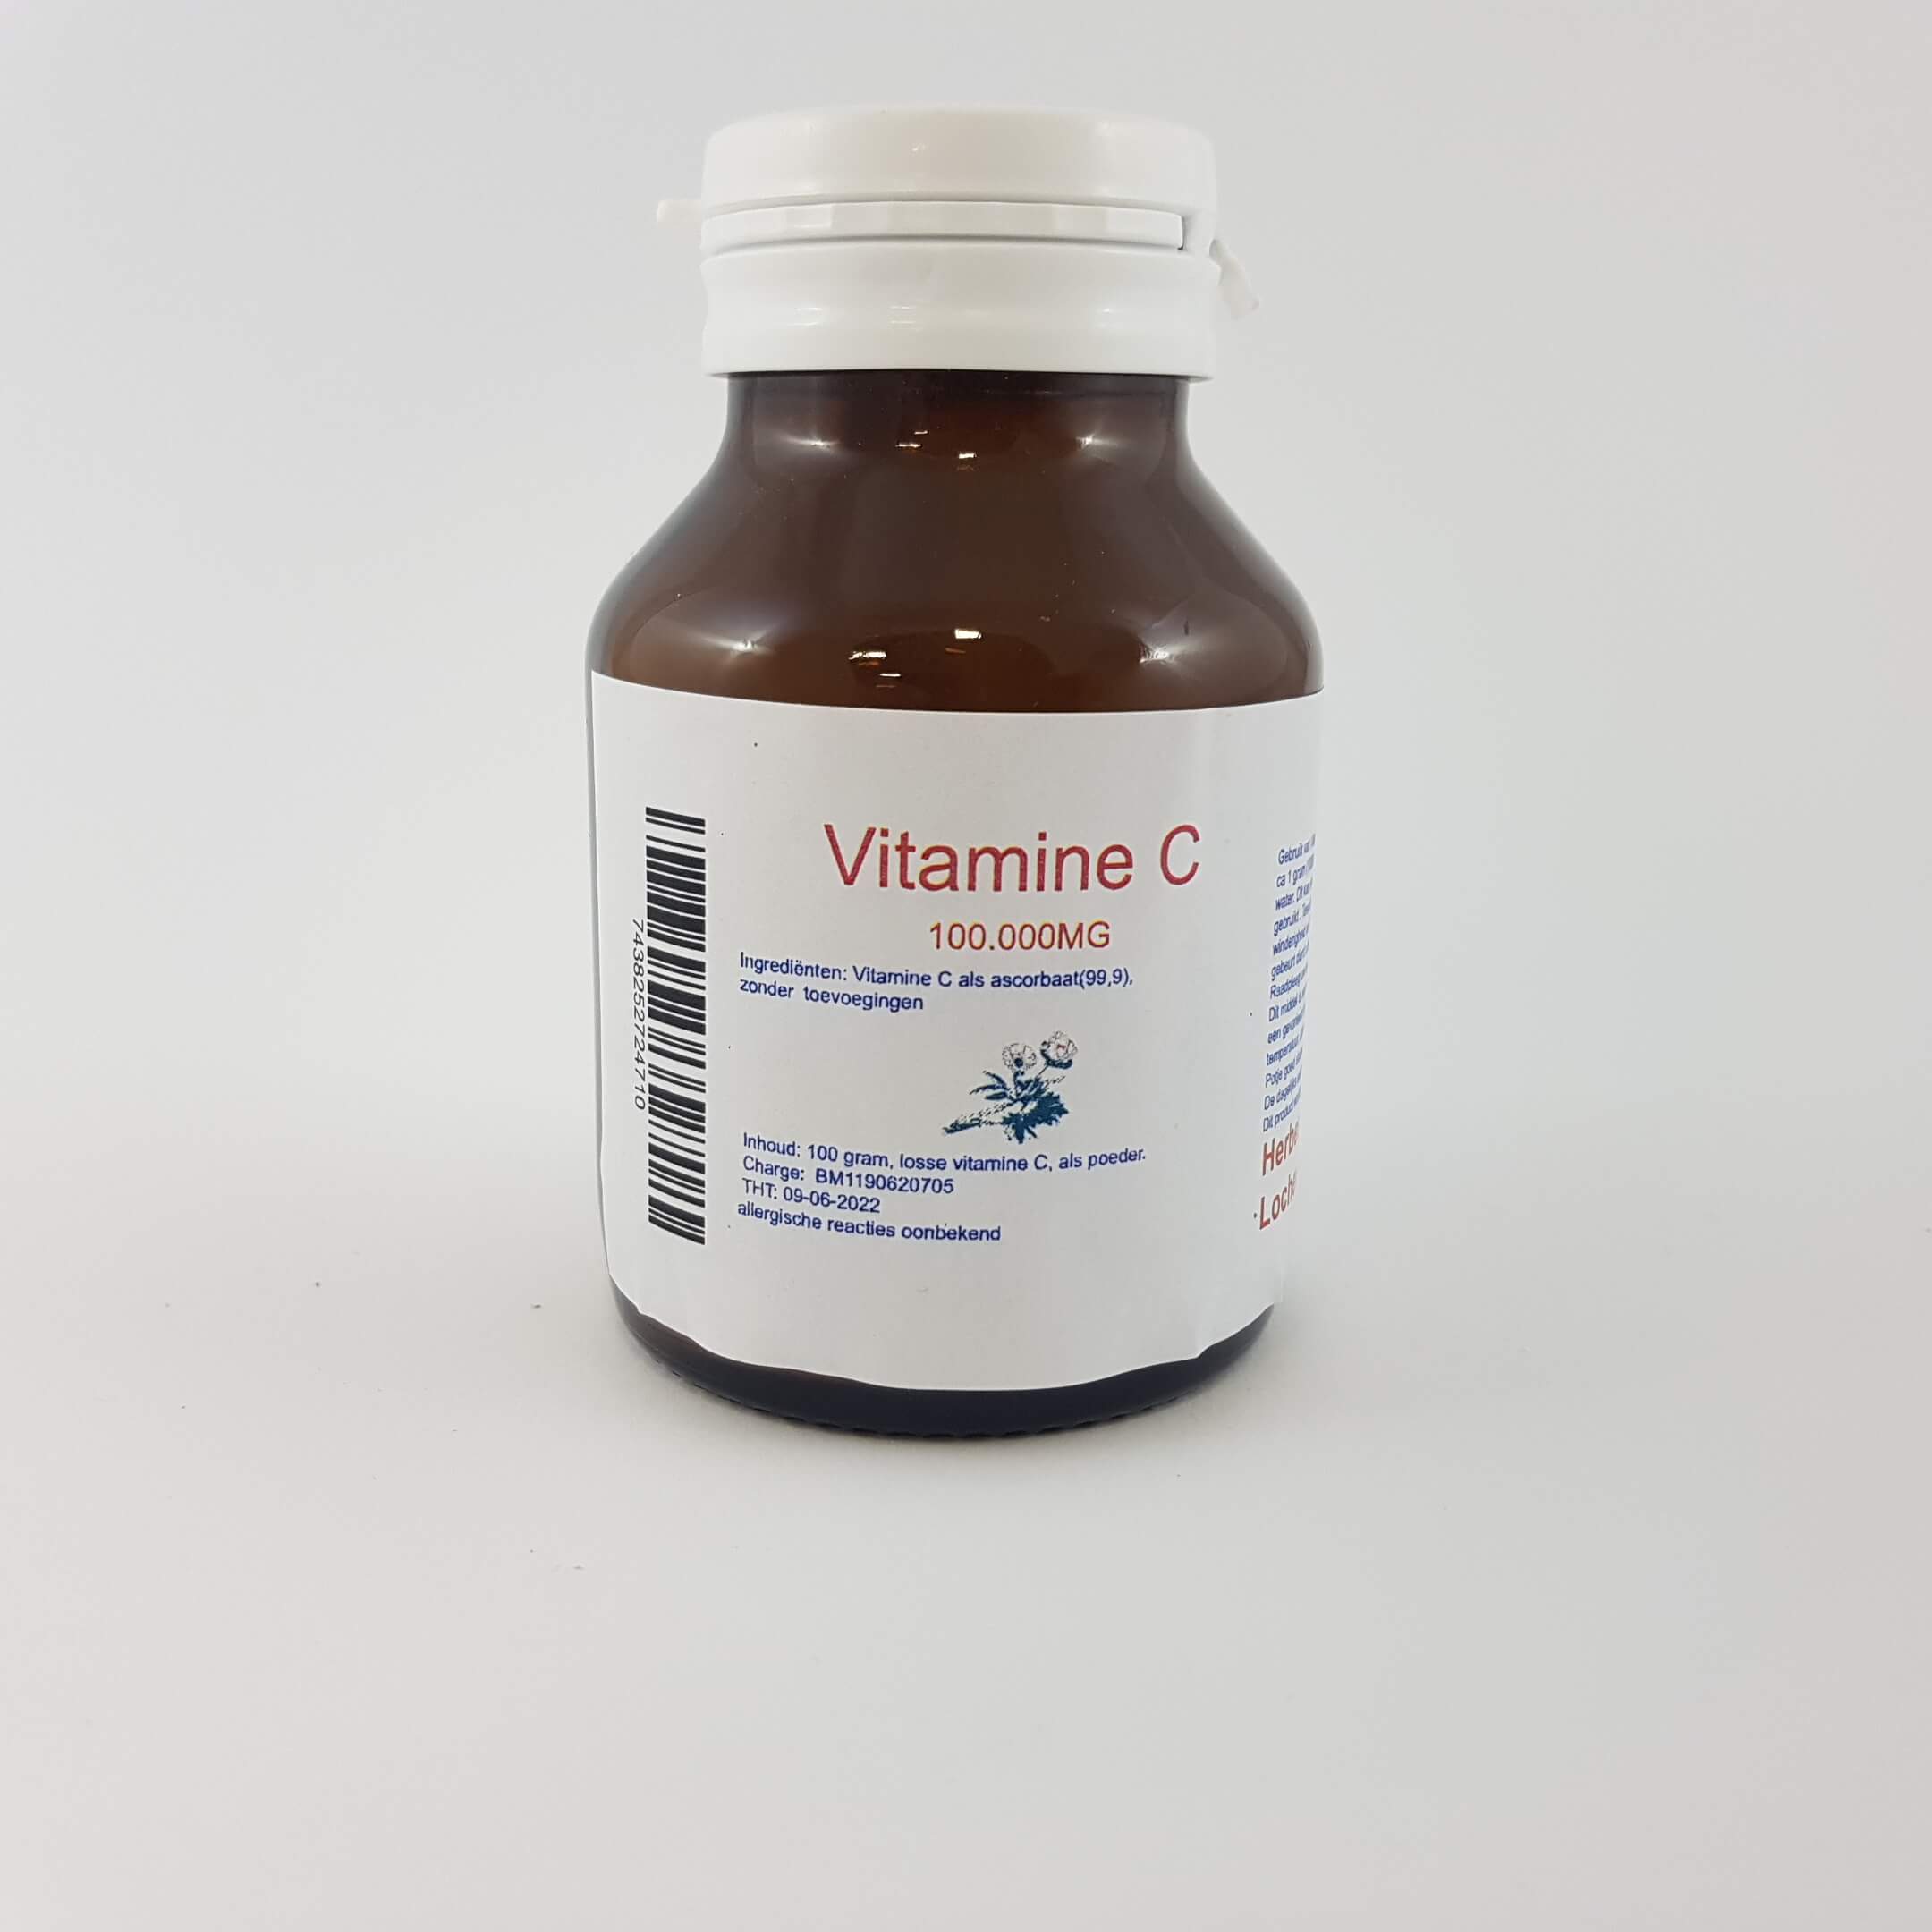 Vitamine C 100.000MG